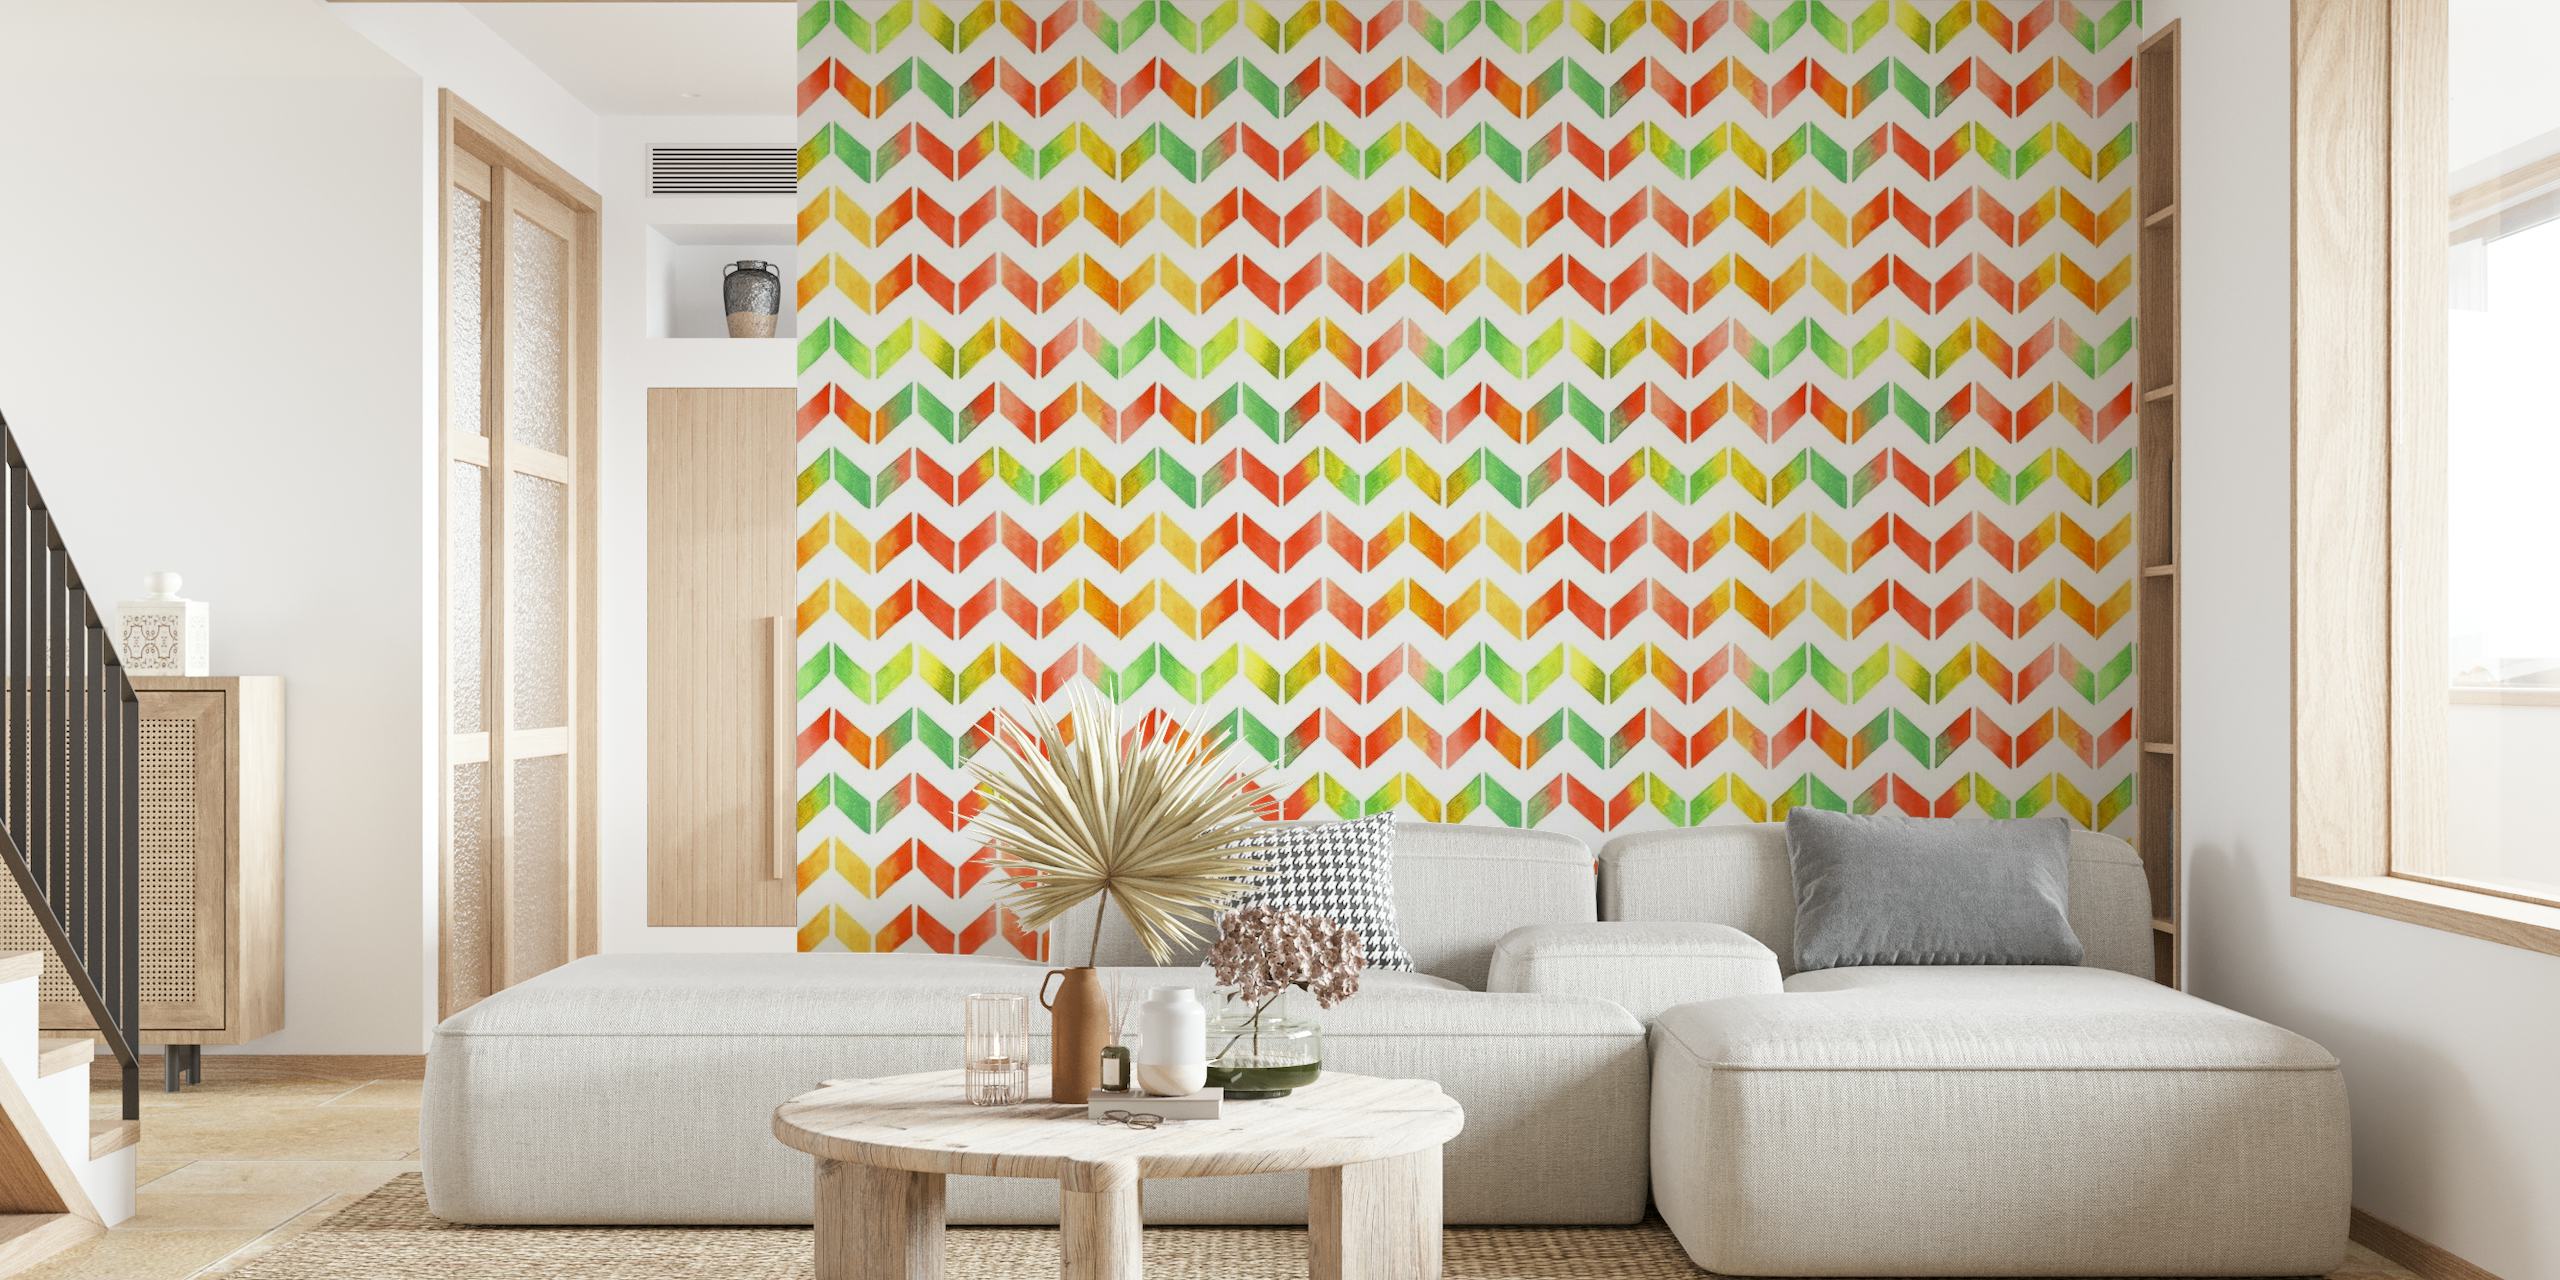 Murale da parete moderno con motivo a zigzag colorato ad acquerello per la decorazione domestica.